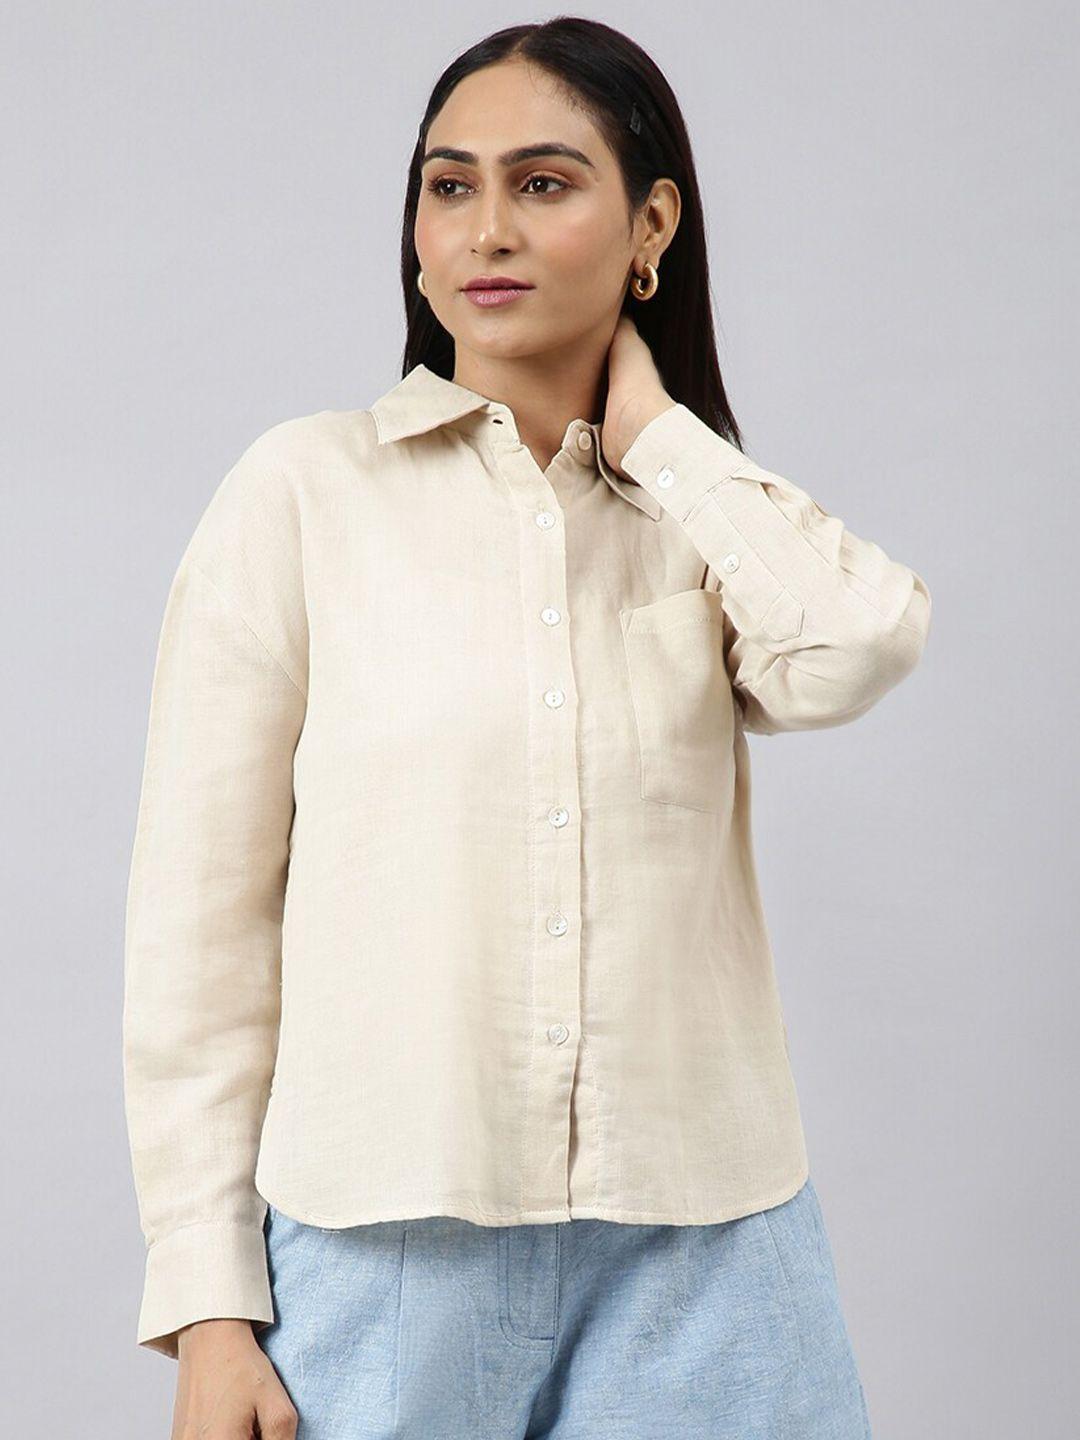 fabindia-women-cotton-casual-shirt